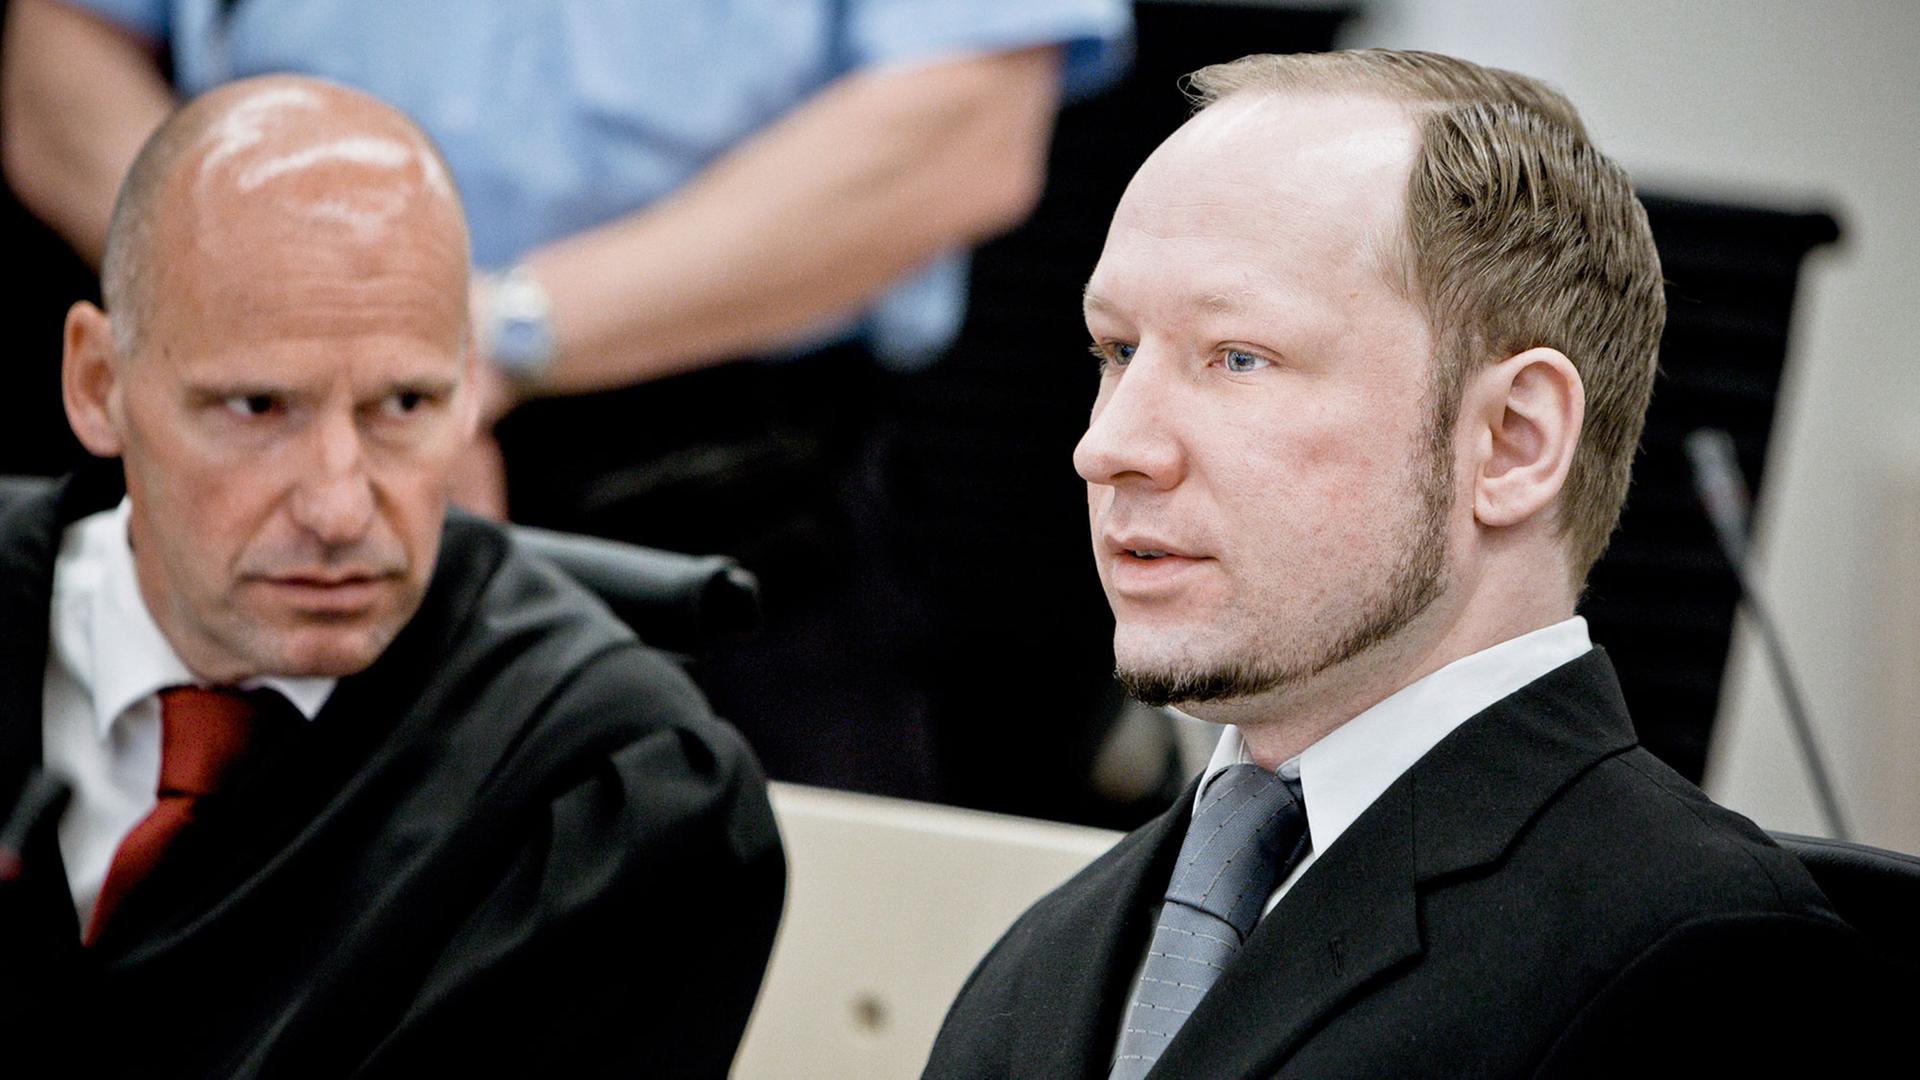 Jurist Geir Lippestad (rechts) neben dem norwegischen Massenmörder Anders Breivik im Gerichtssaal